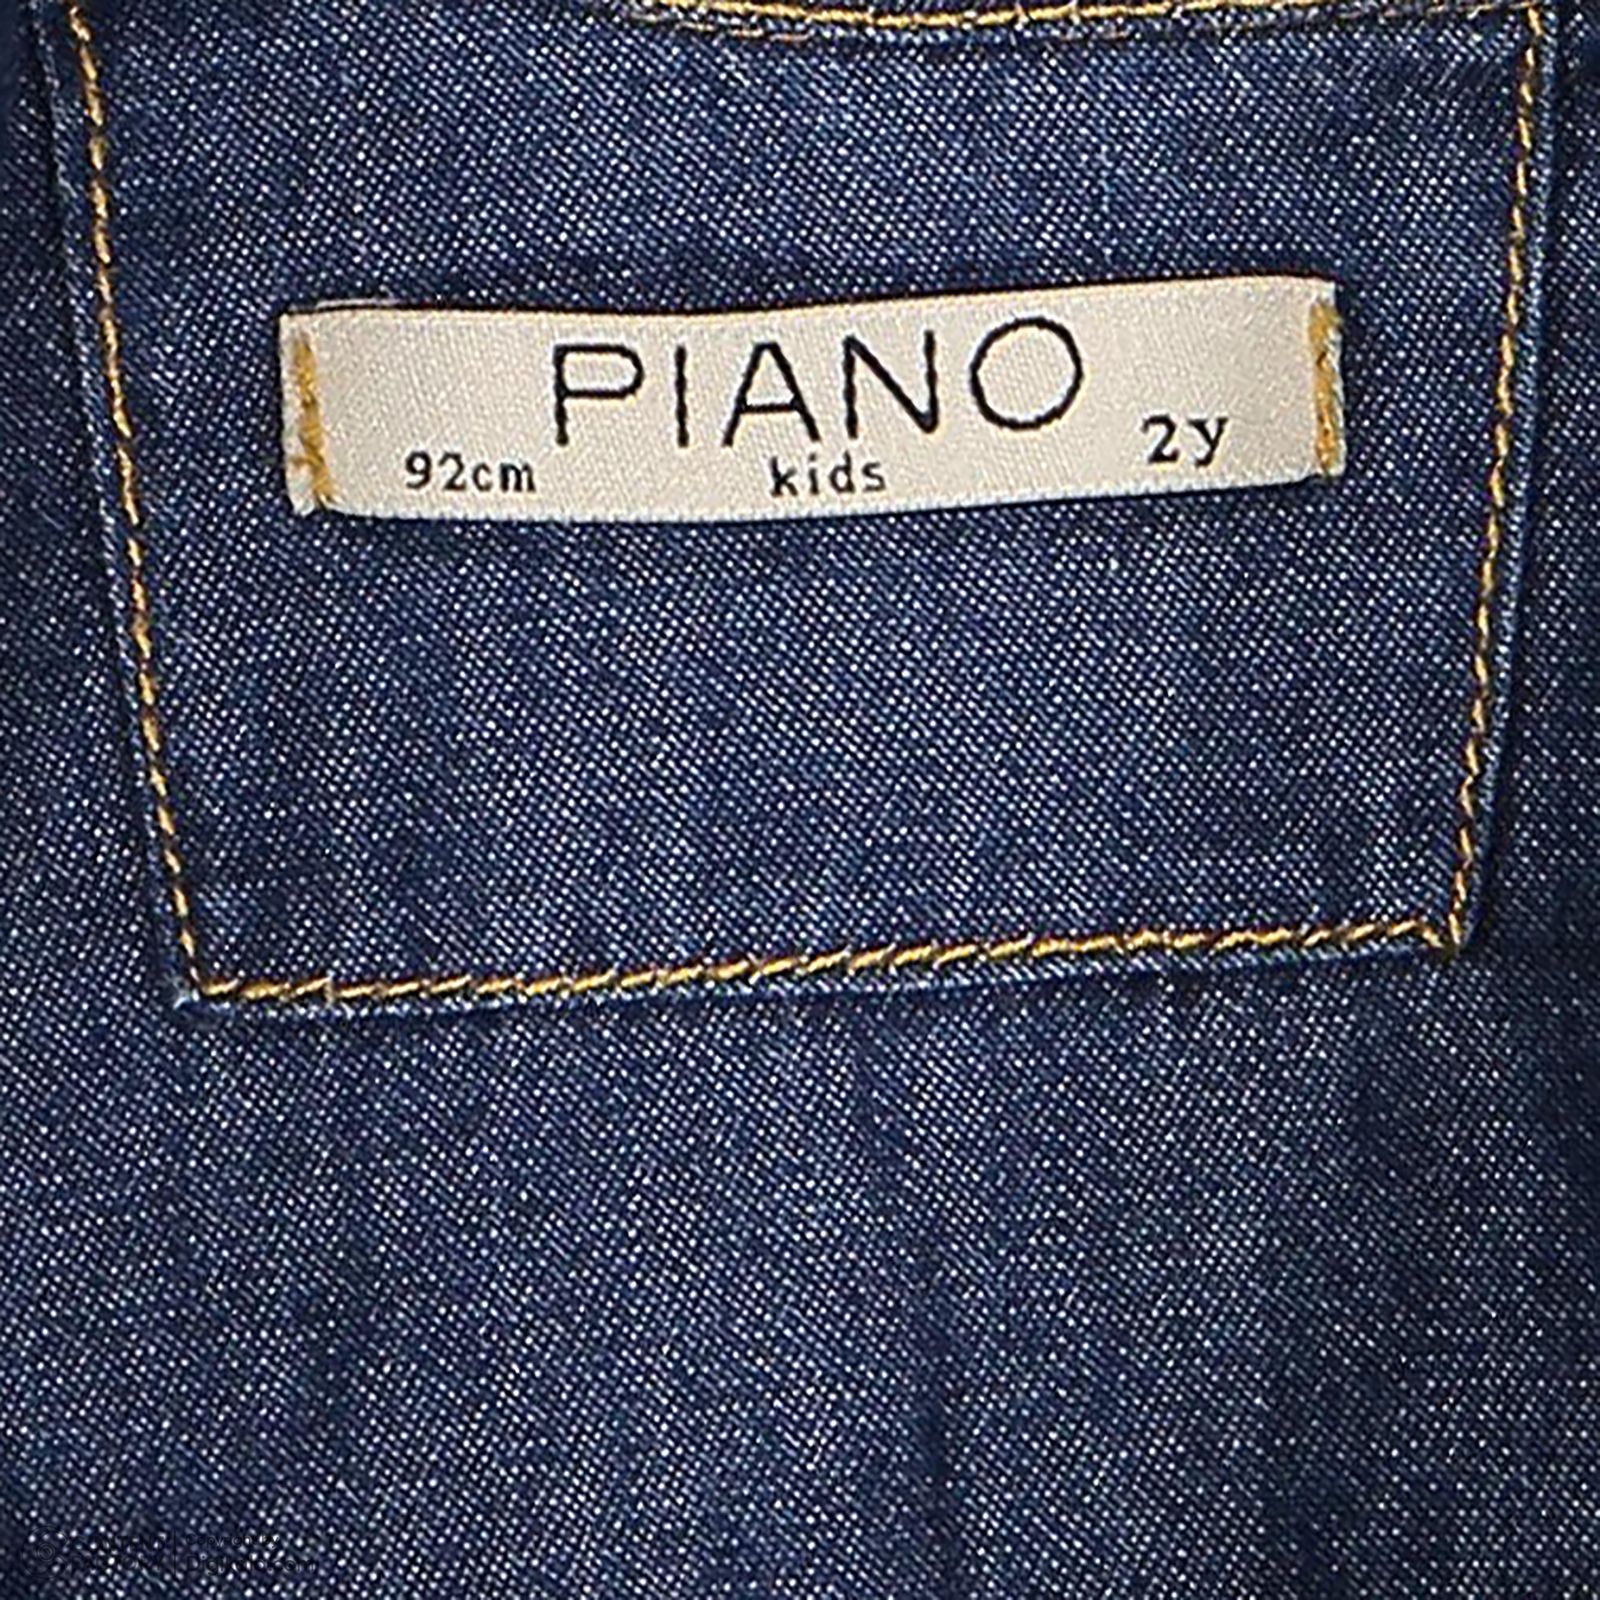 پیراهن پسرانه پیانو مدل 1172 رنگ سرمه ای -  - 5